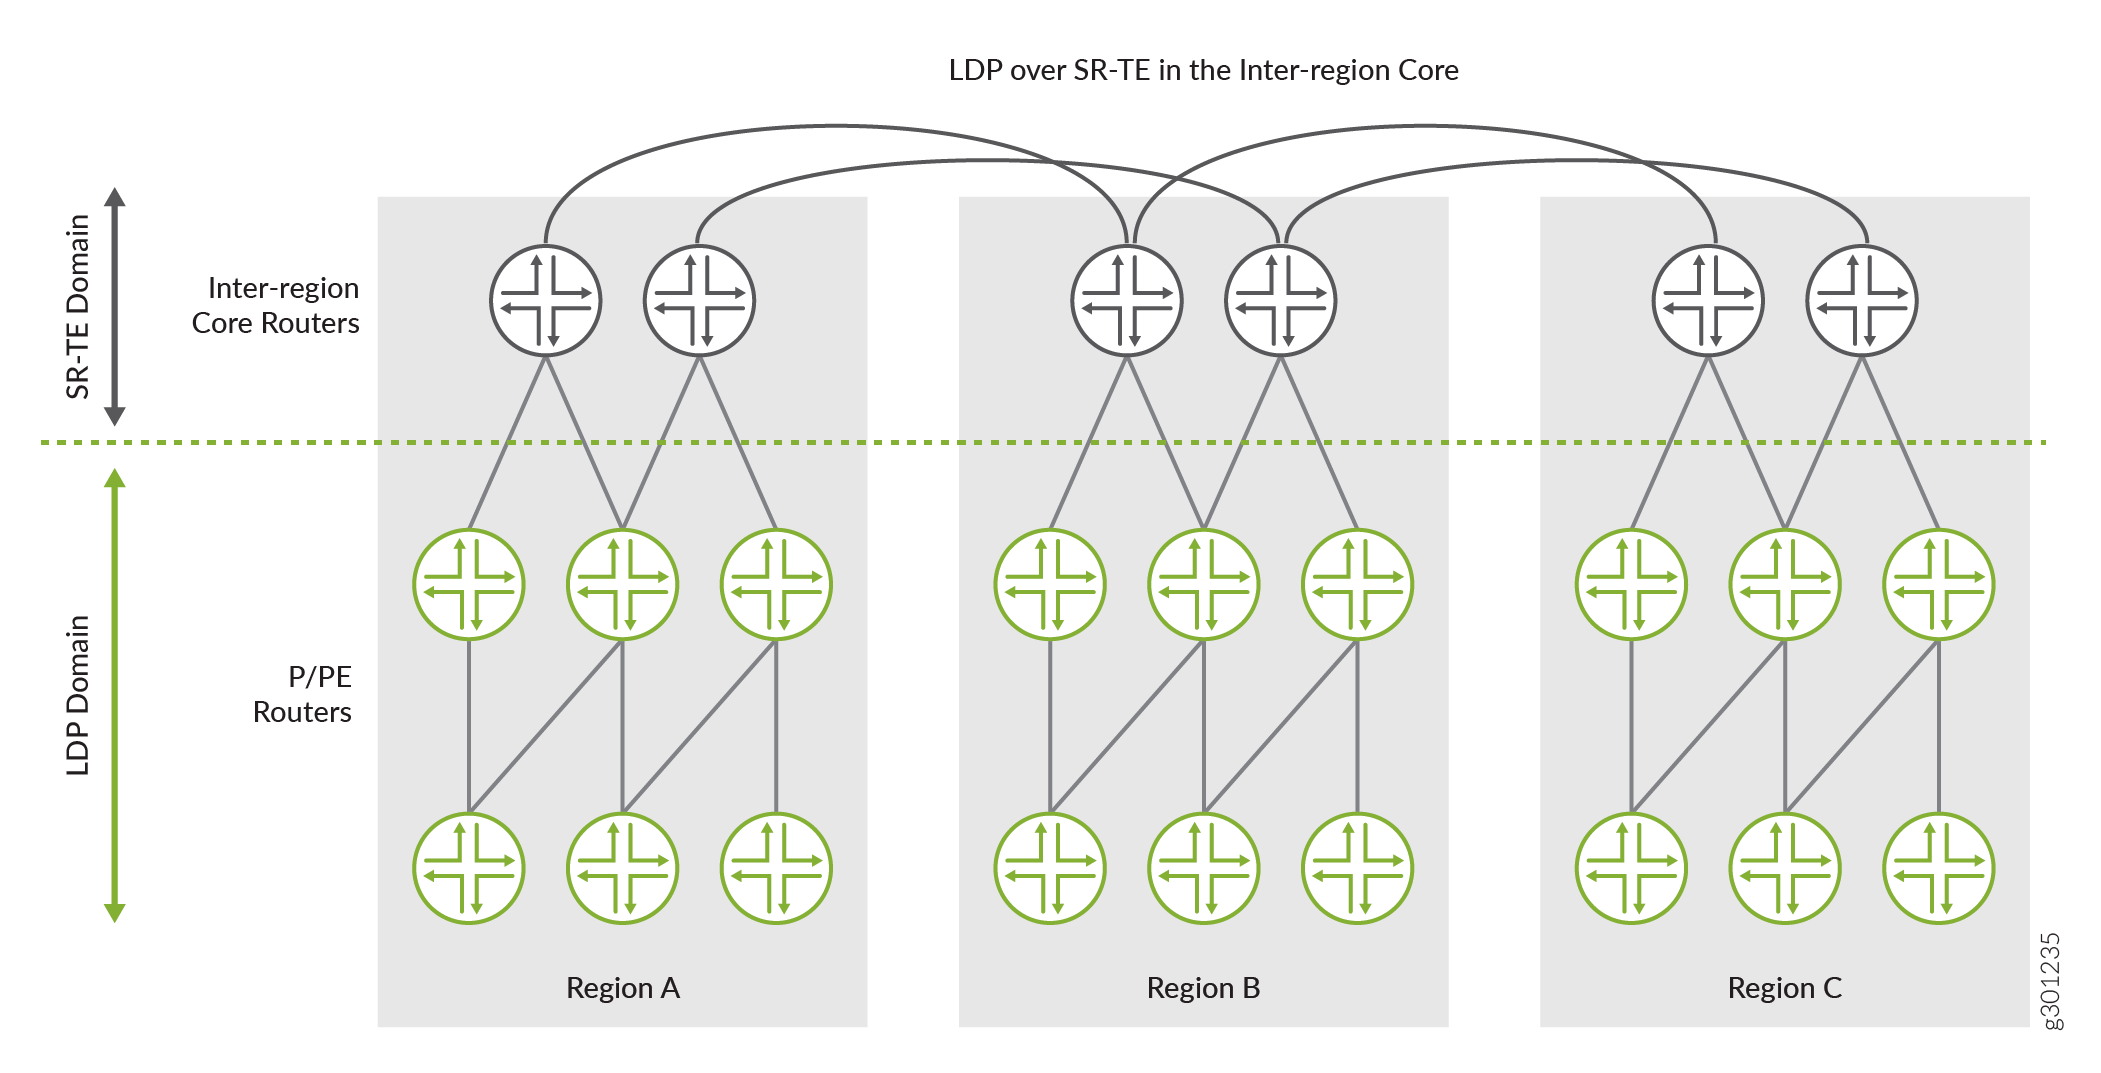 LDP sobre SR-TE entre redes núcleo inter-região